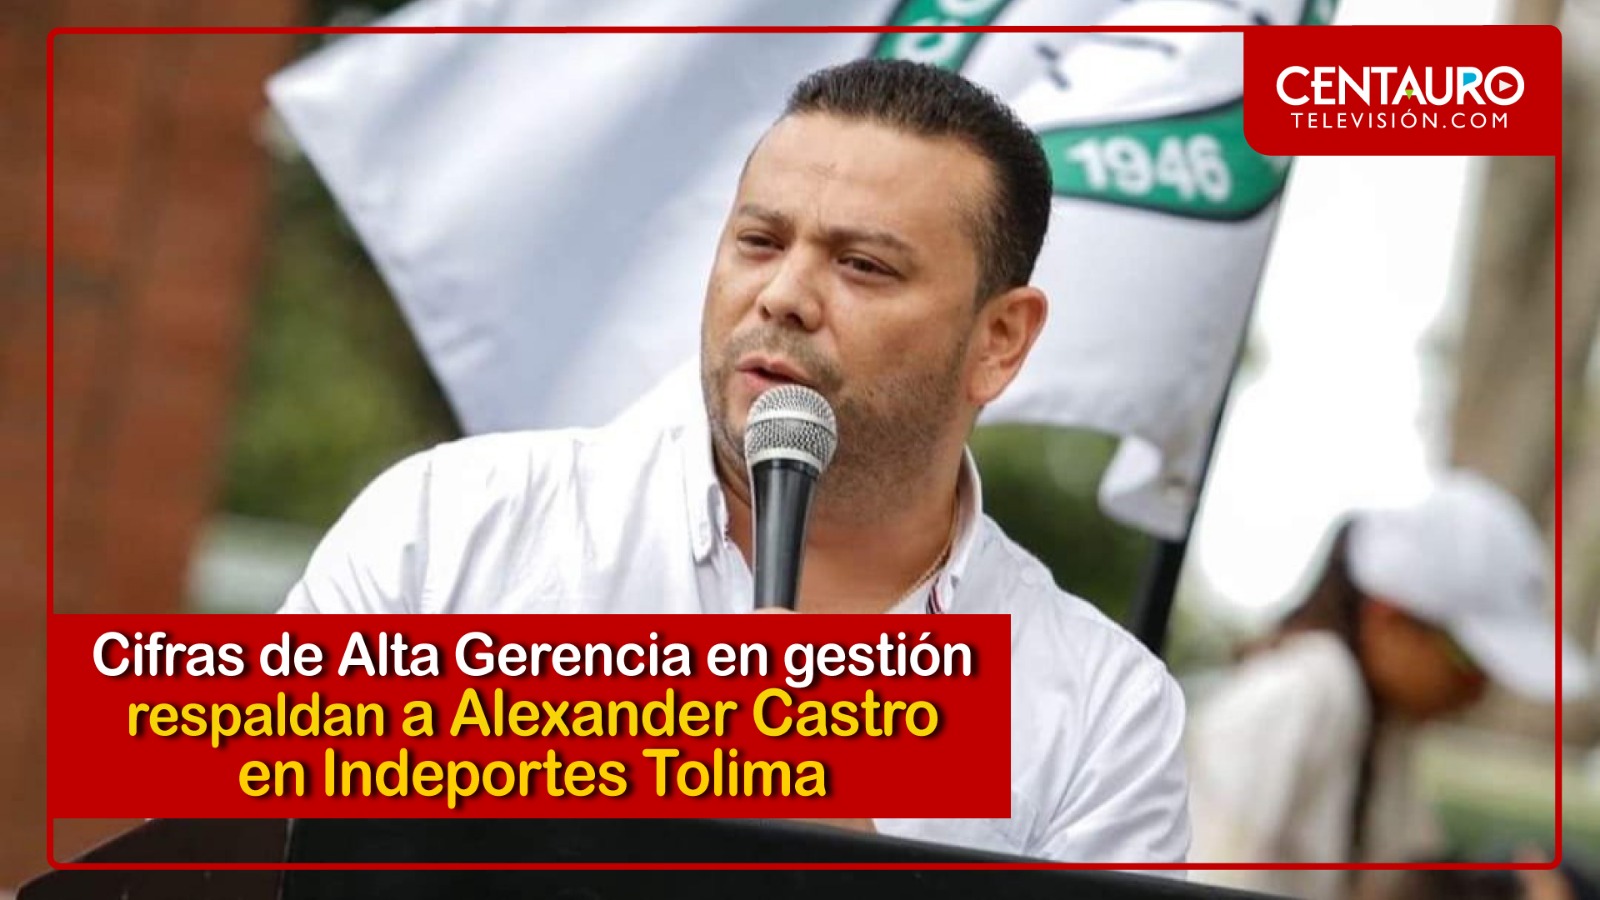 Movimientos de Alta Gerencia en gestión de Alexander Castro en Indeportes Tolima